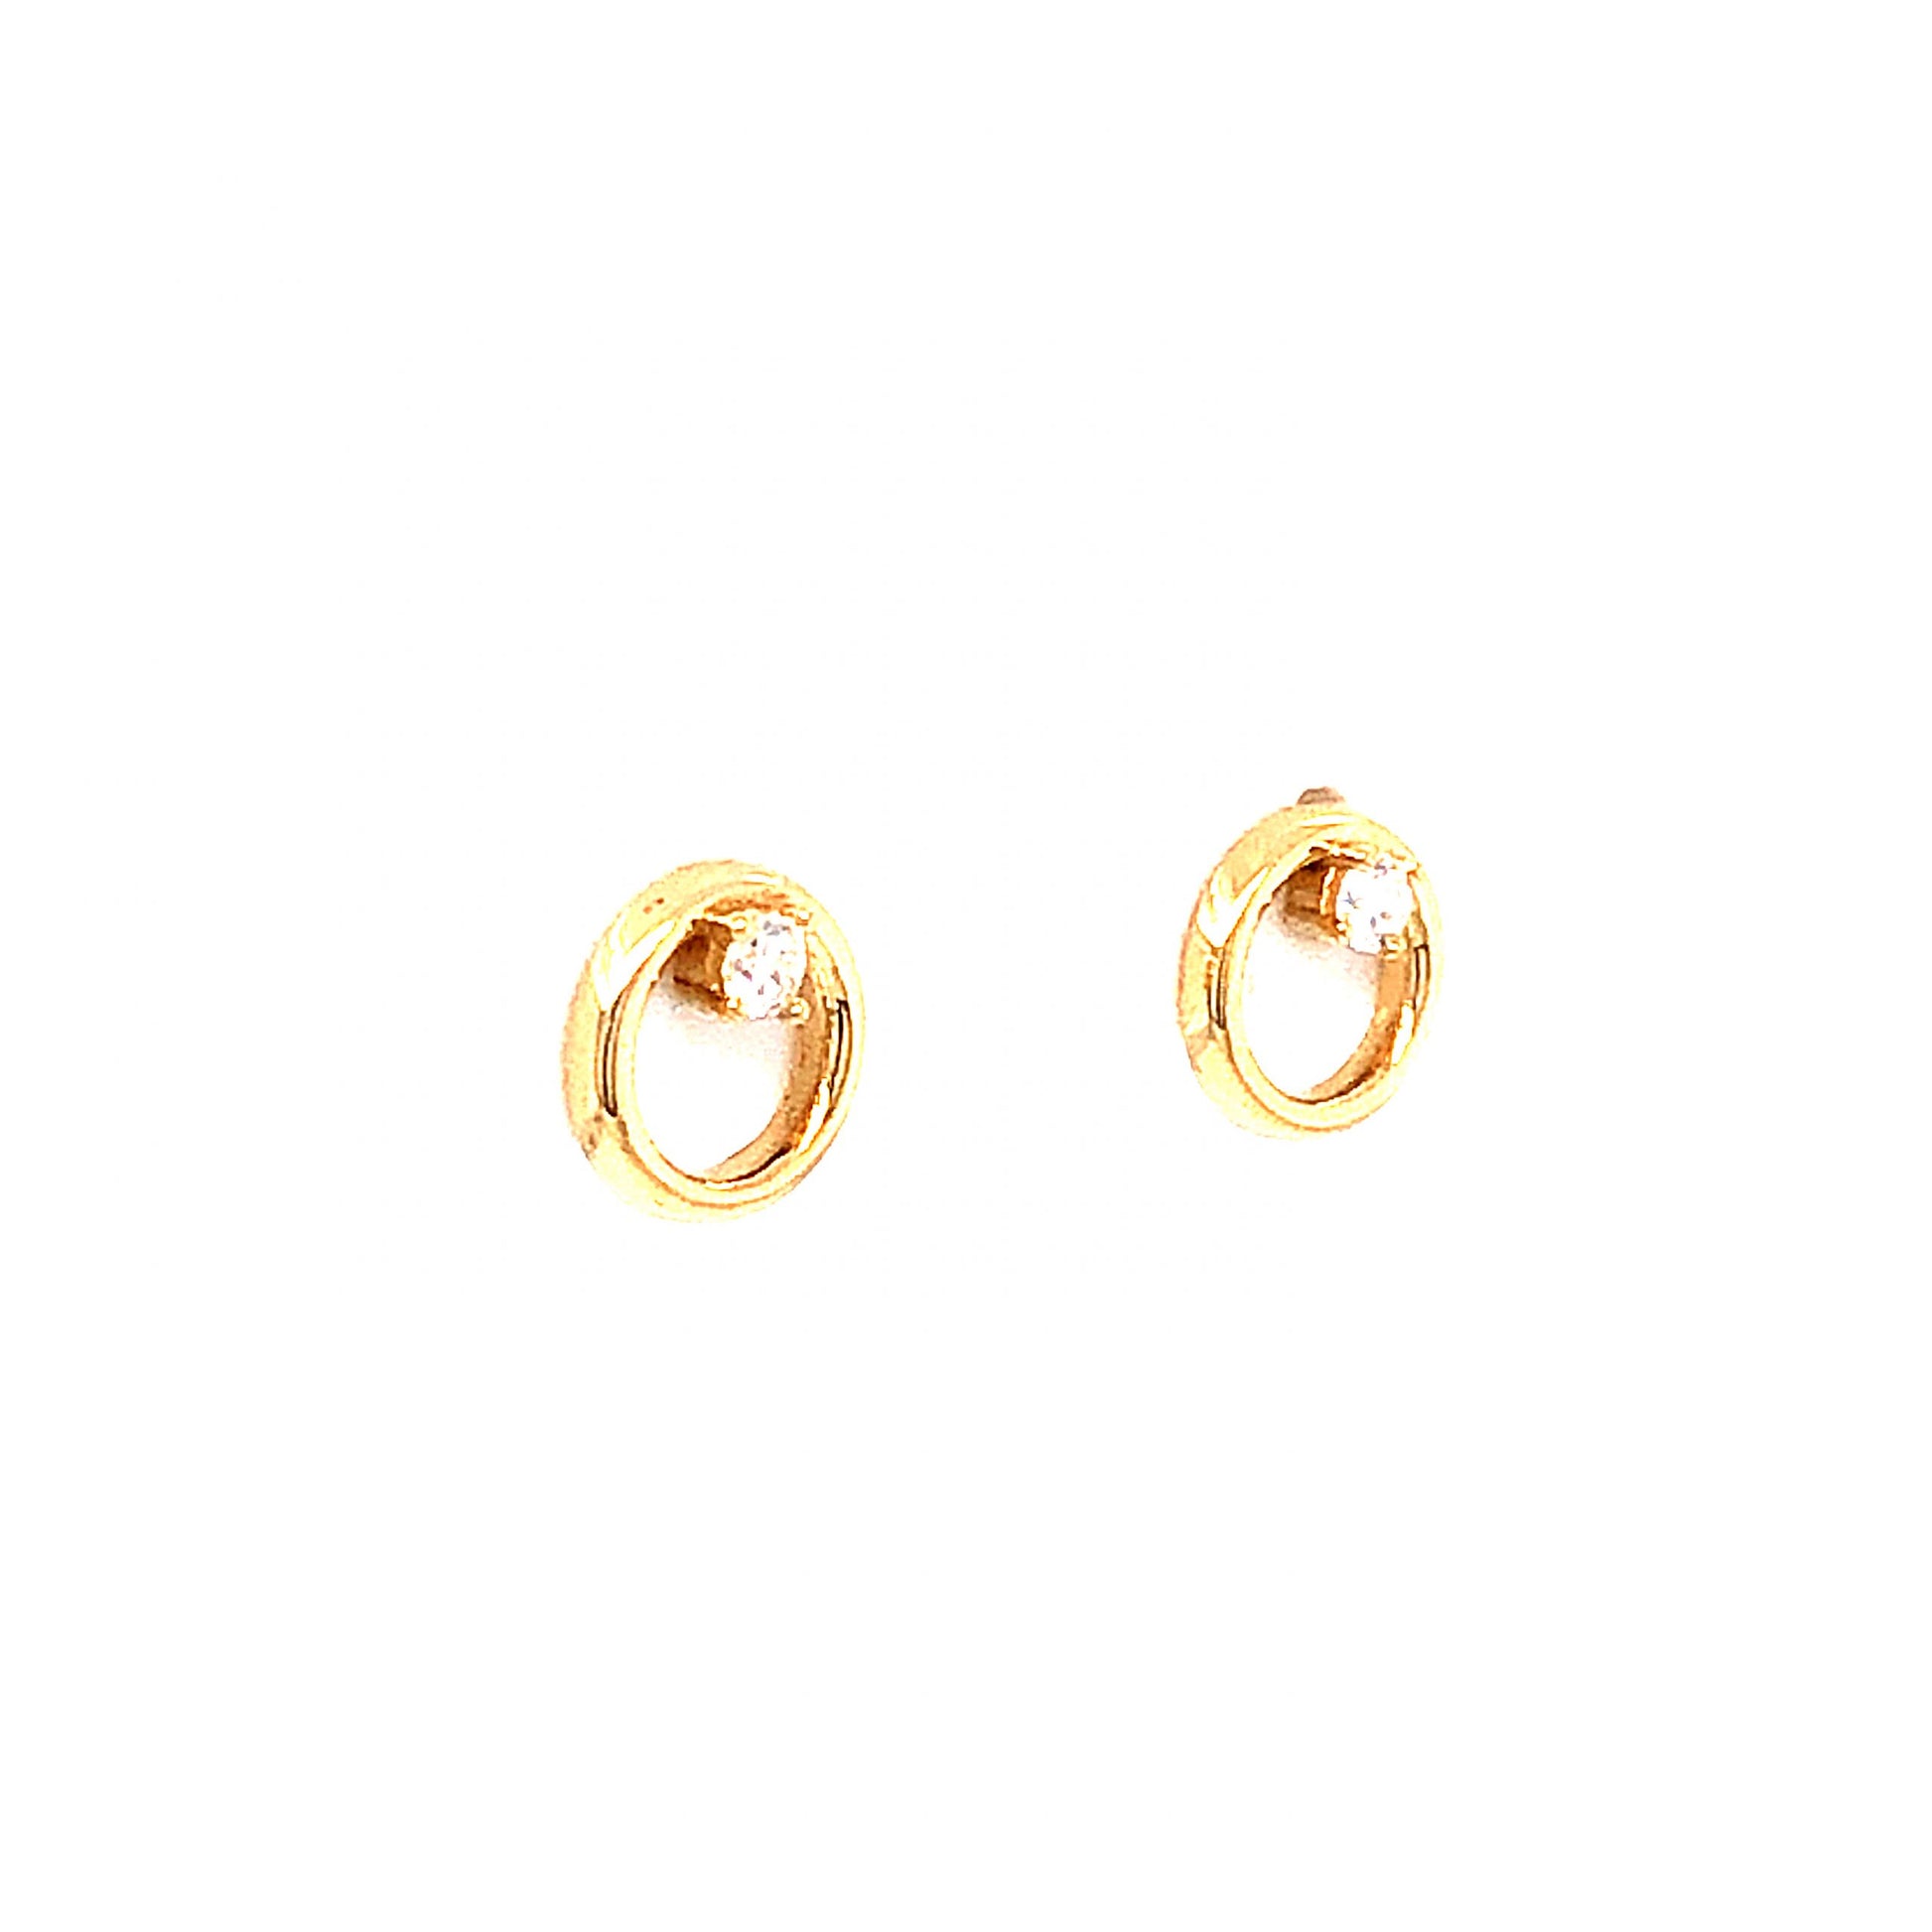 Circular Diamond Stud Earrings in 14k Yellow Gold